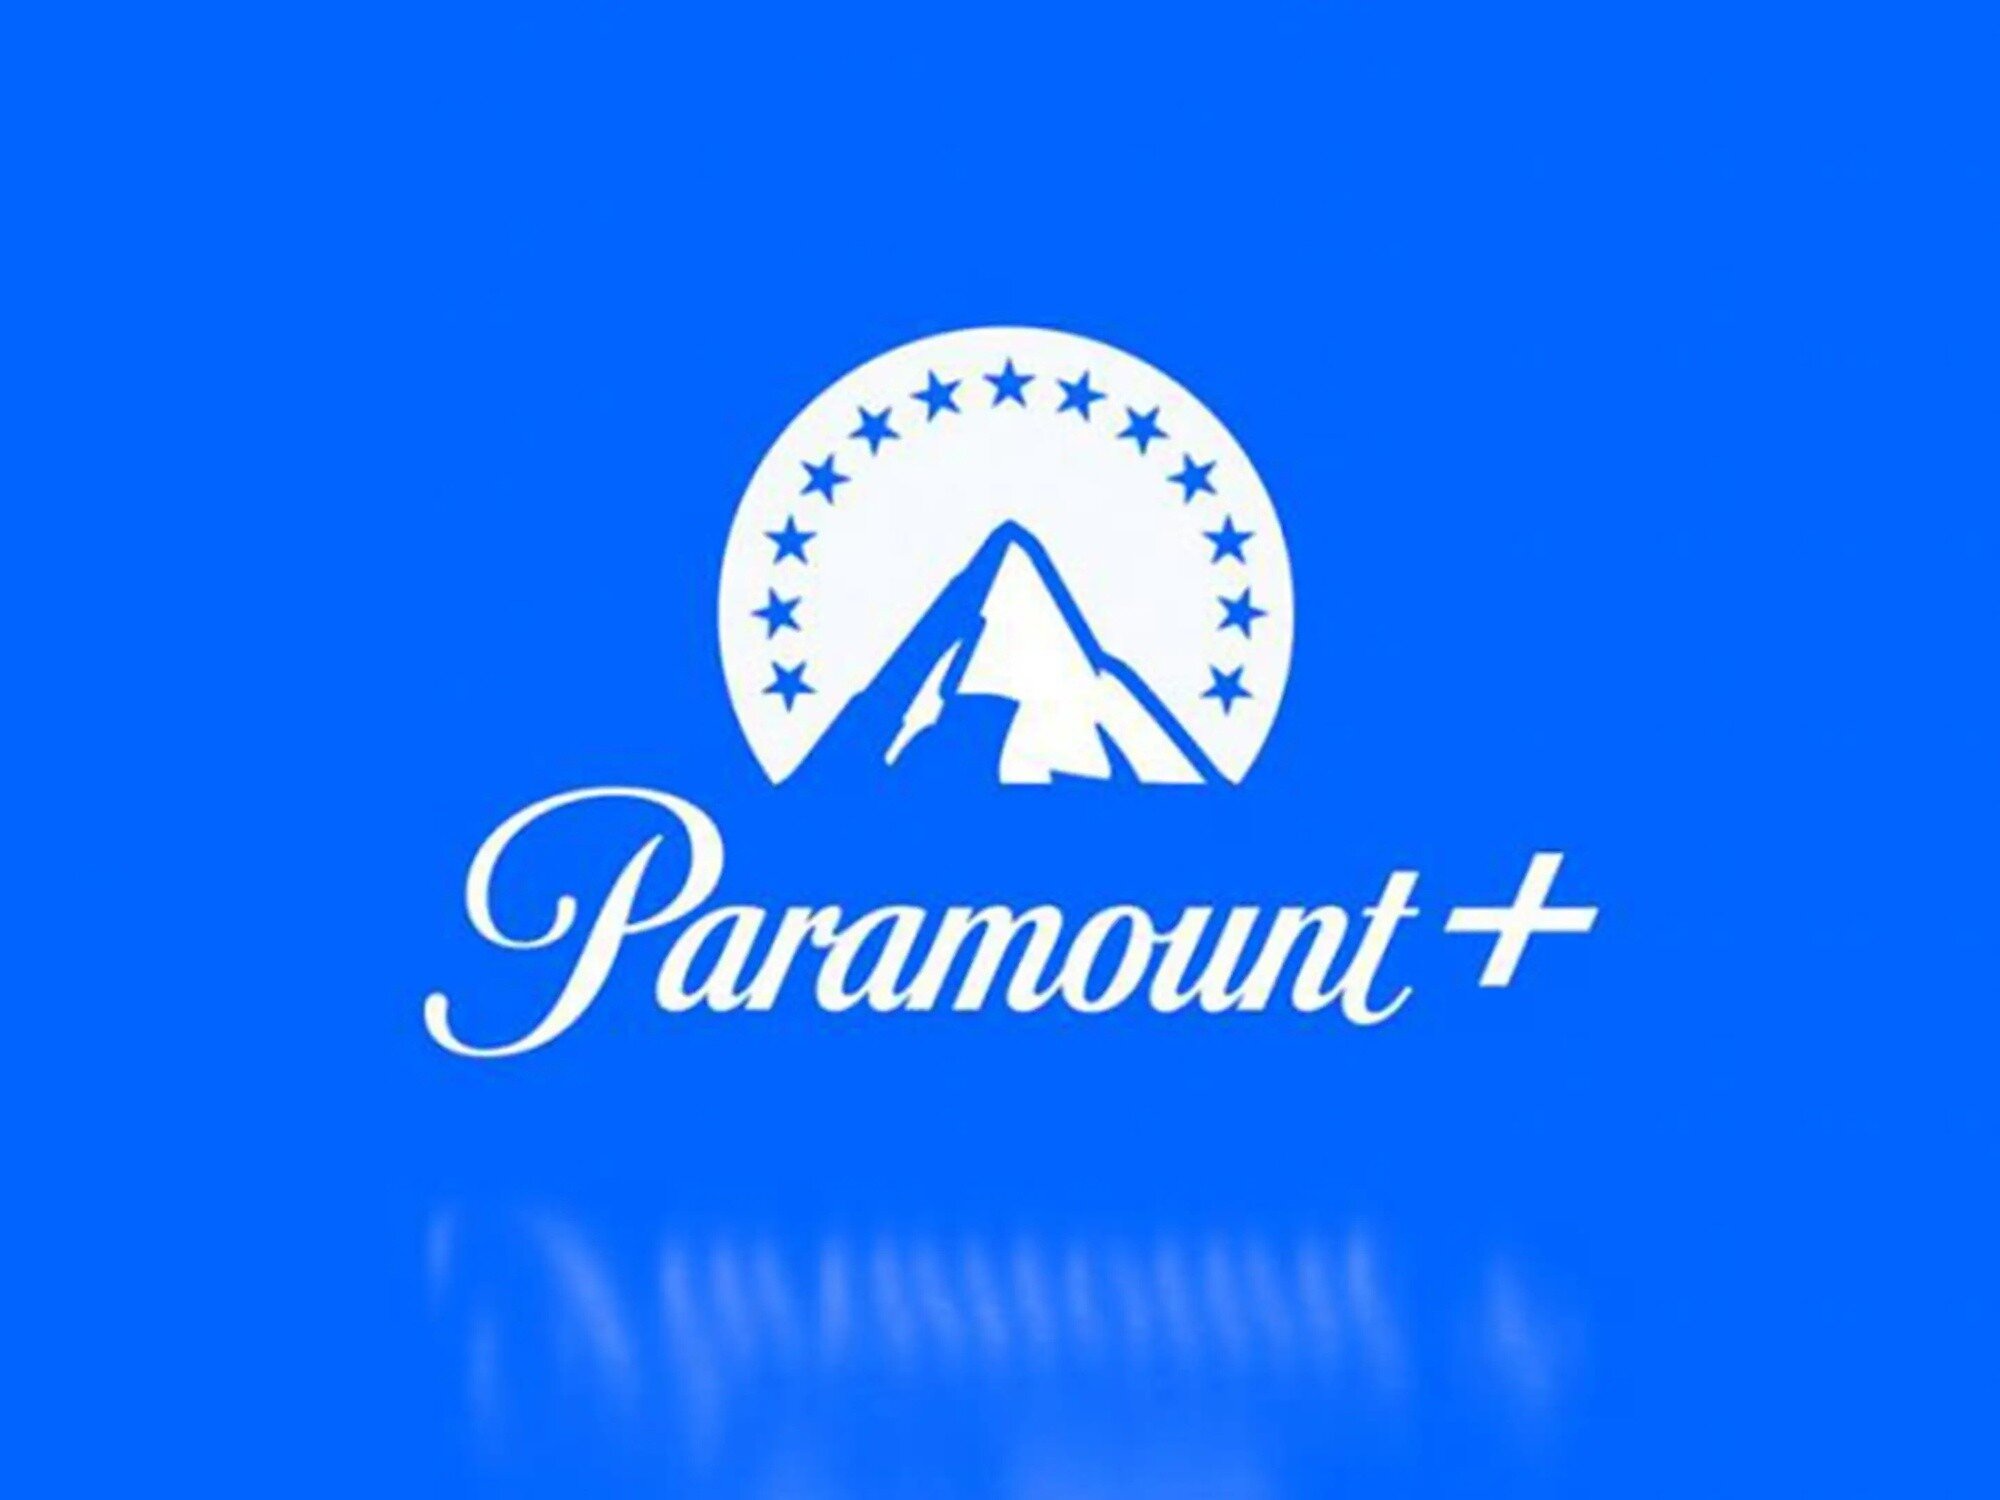 Νέα συνδρομητικά πακέτα ετοιμάζεται να παρουσιάσει η Paramount